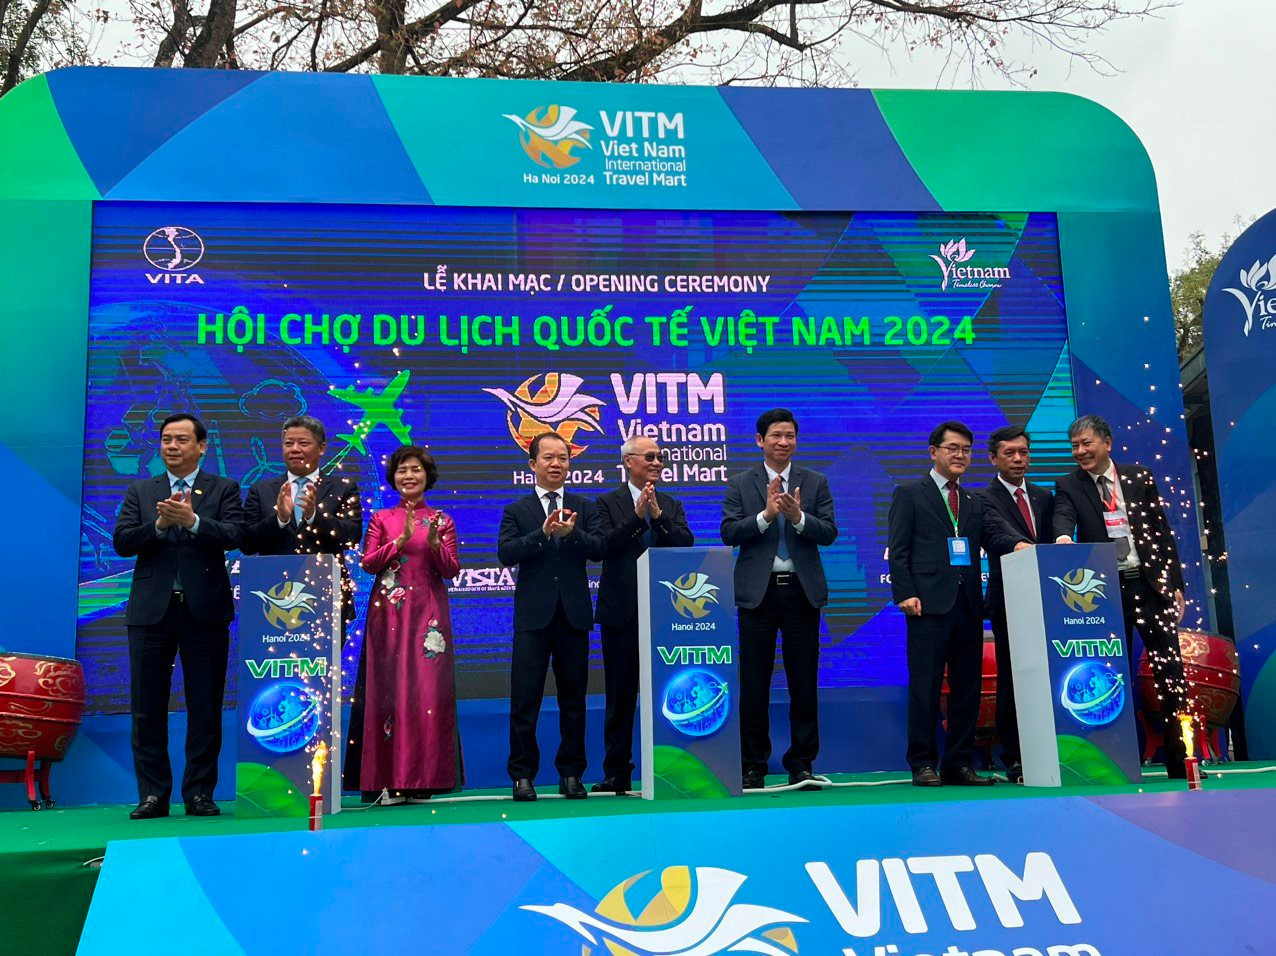 Khai mạc Hội chợ Du lịch quốc tế Việt Nam 2024 (VITM 2024).